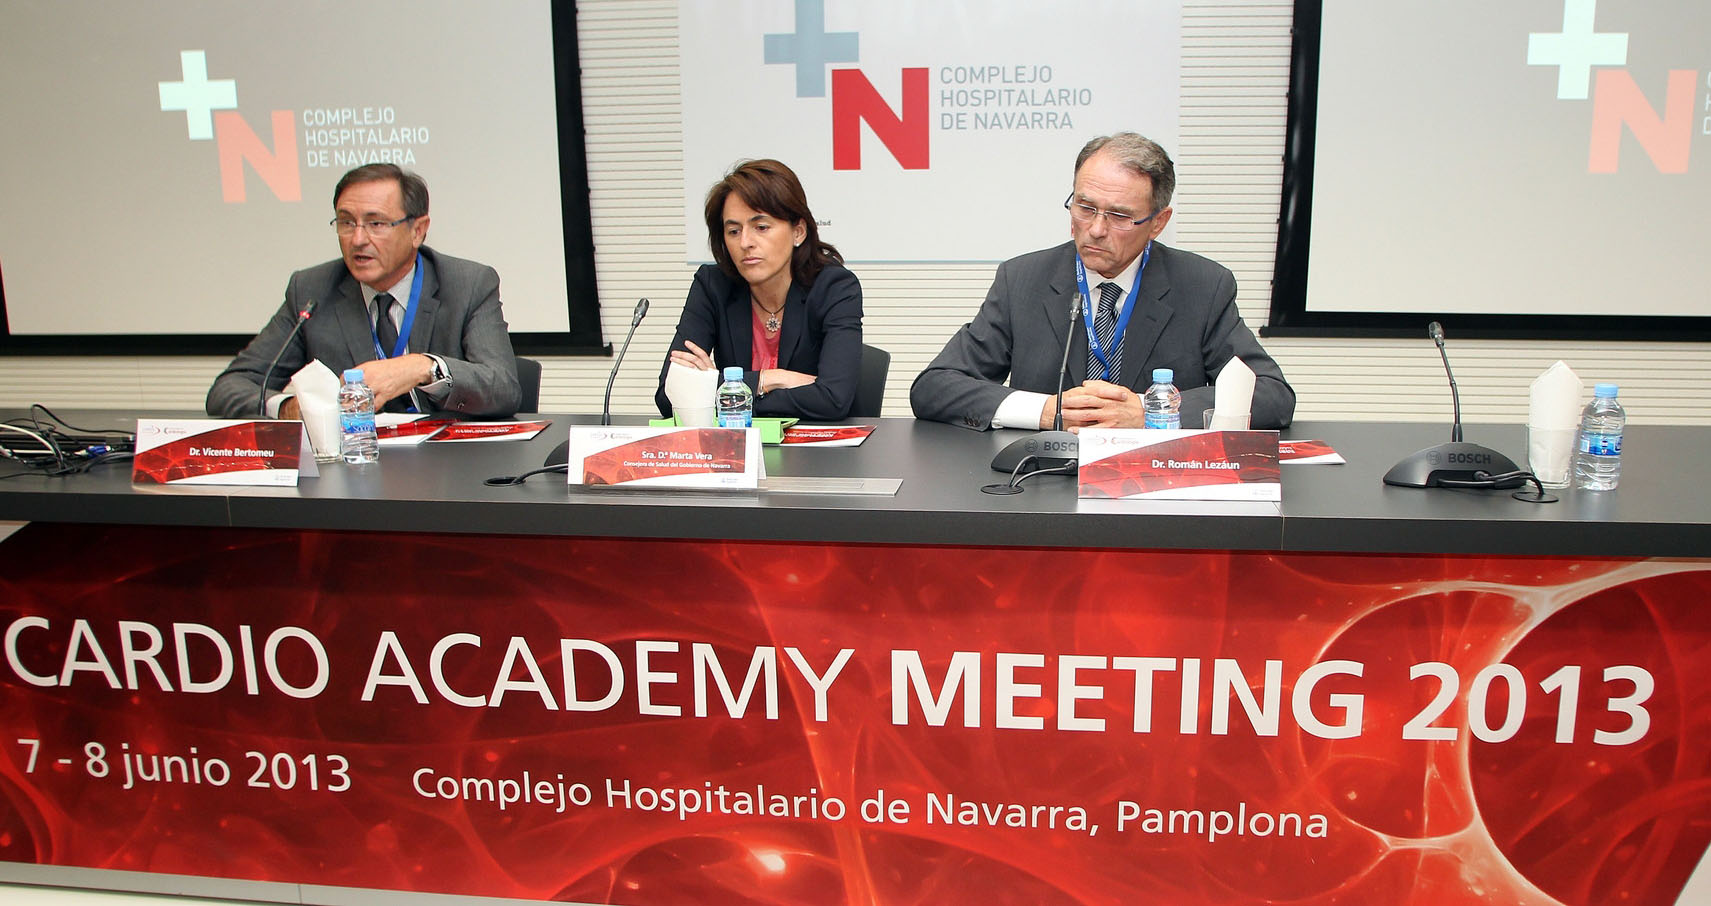 De izquierda a derecha, Dr, Vicente Bertomeun, Marta Vera y Dr. Román Lezáun.